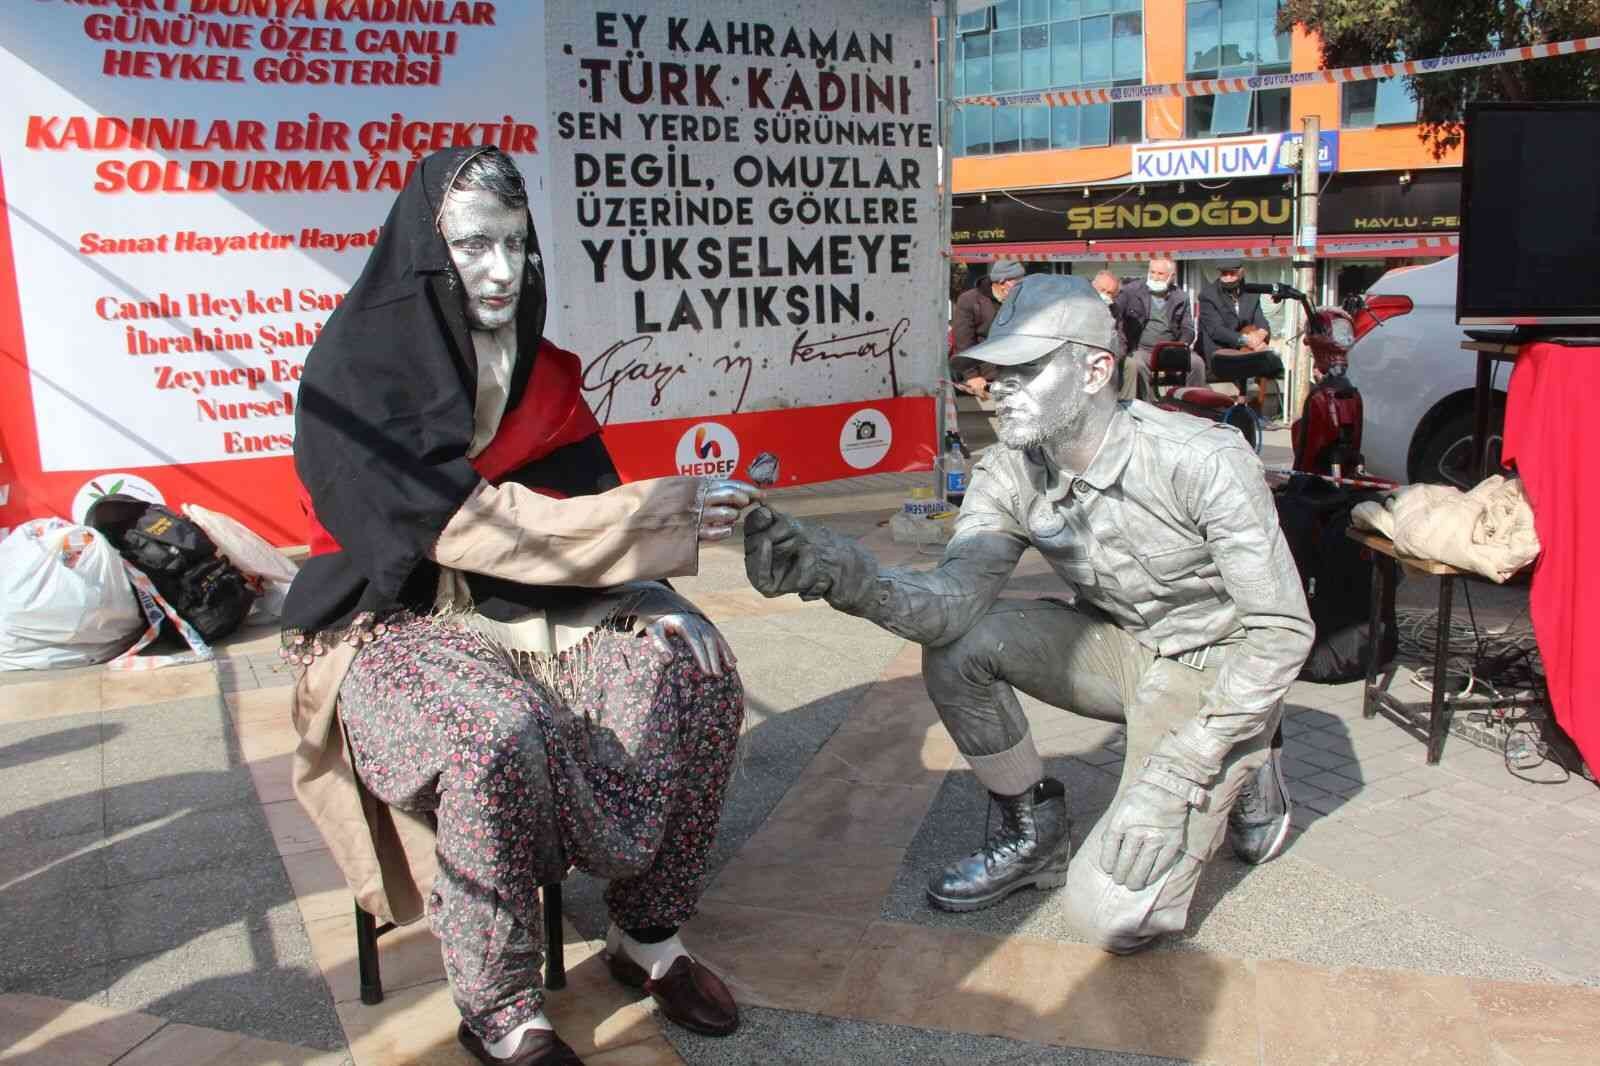 Kadınlar Gününe özel canlı heykel gösterisi #malatya